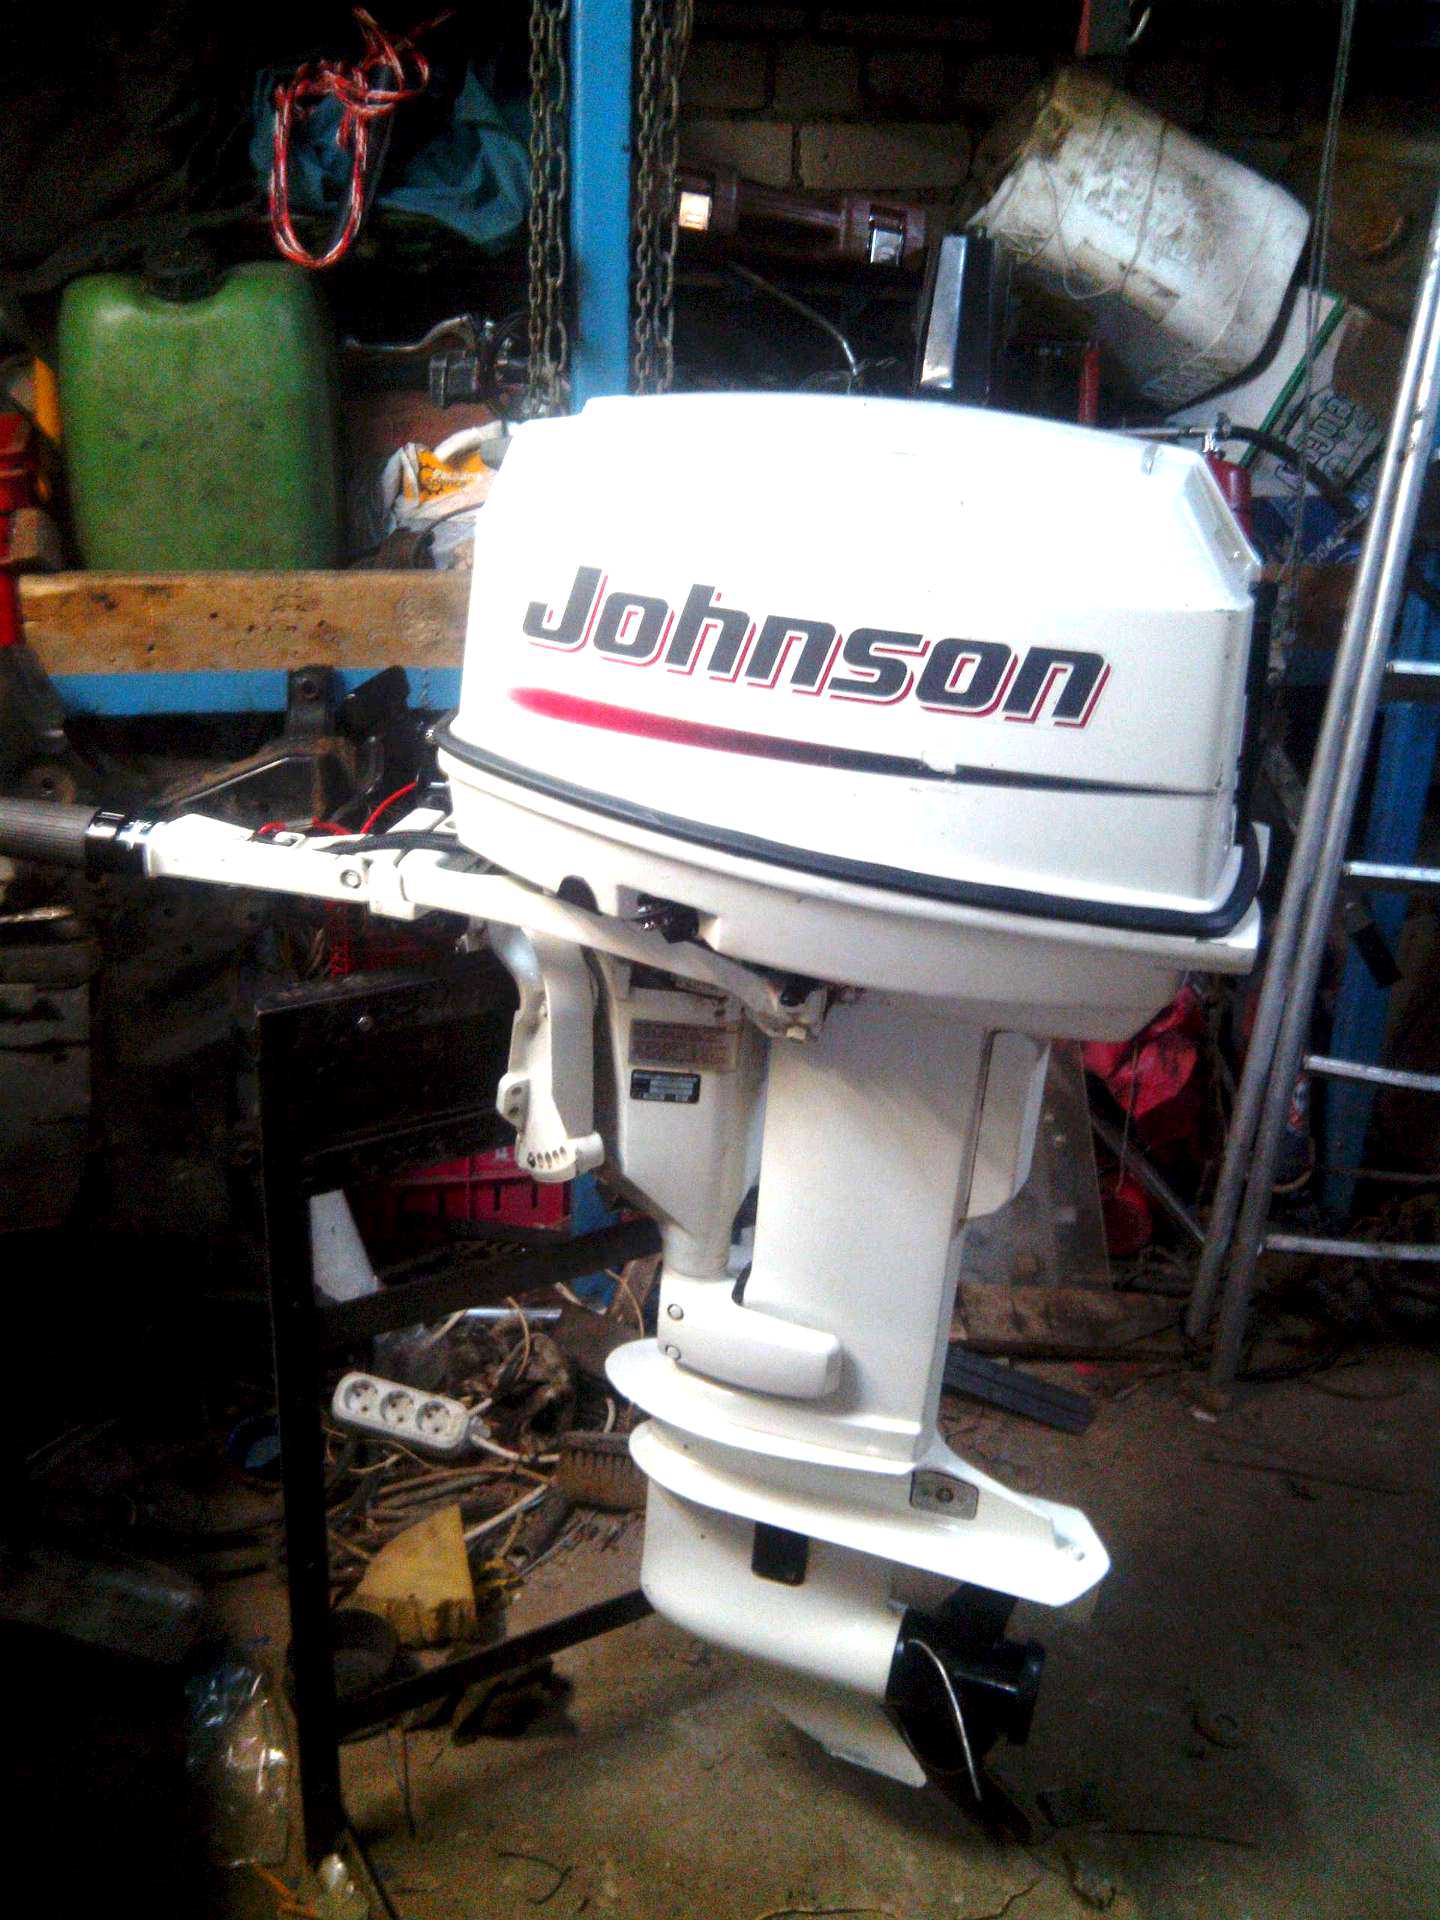 Мотор джонсон купить. Лодочный мотор Джонсон 30 л с. Лодочный мотор Джонсон 25. Лодочный мотор Джонсон 30 2х тактный. Лодочный мотор Джонсон 30 4 тактный.